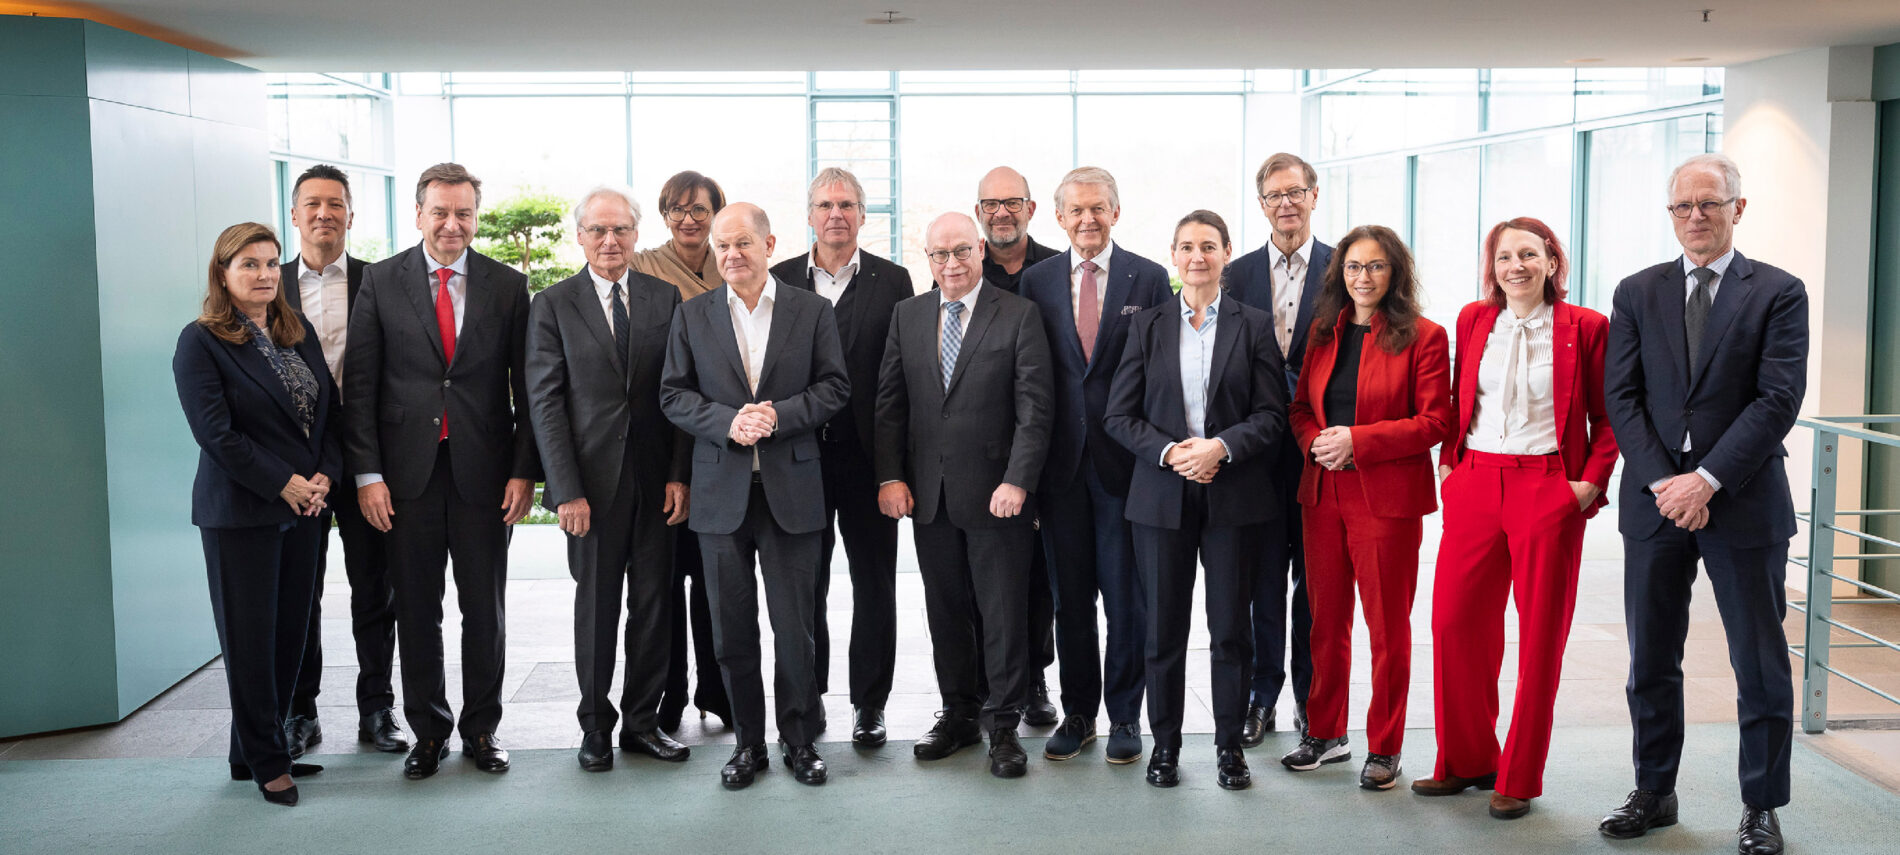 Mitglieder des Zukunftsrats des Bundeskanzlers mit Bundeskanzler Olaf Scholz